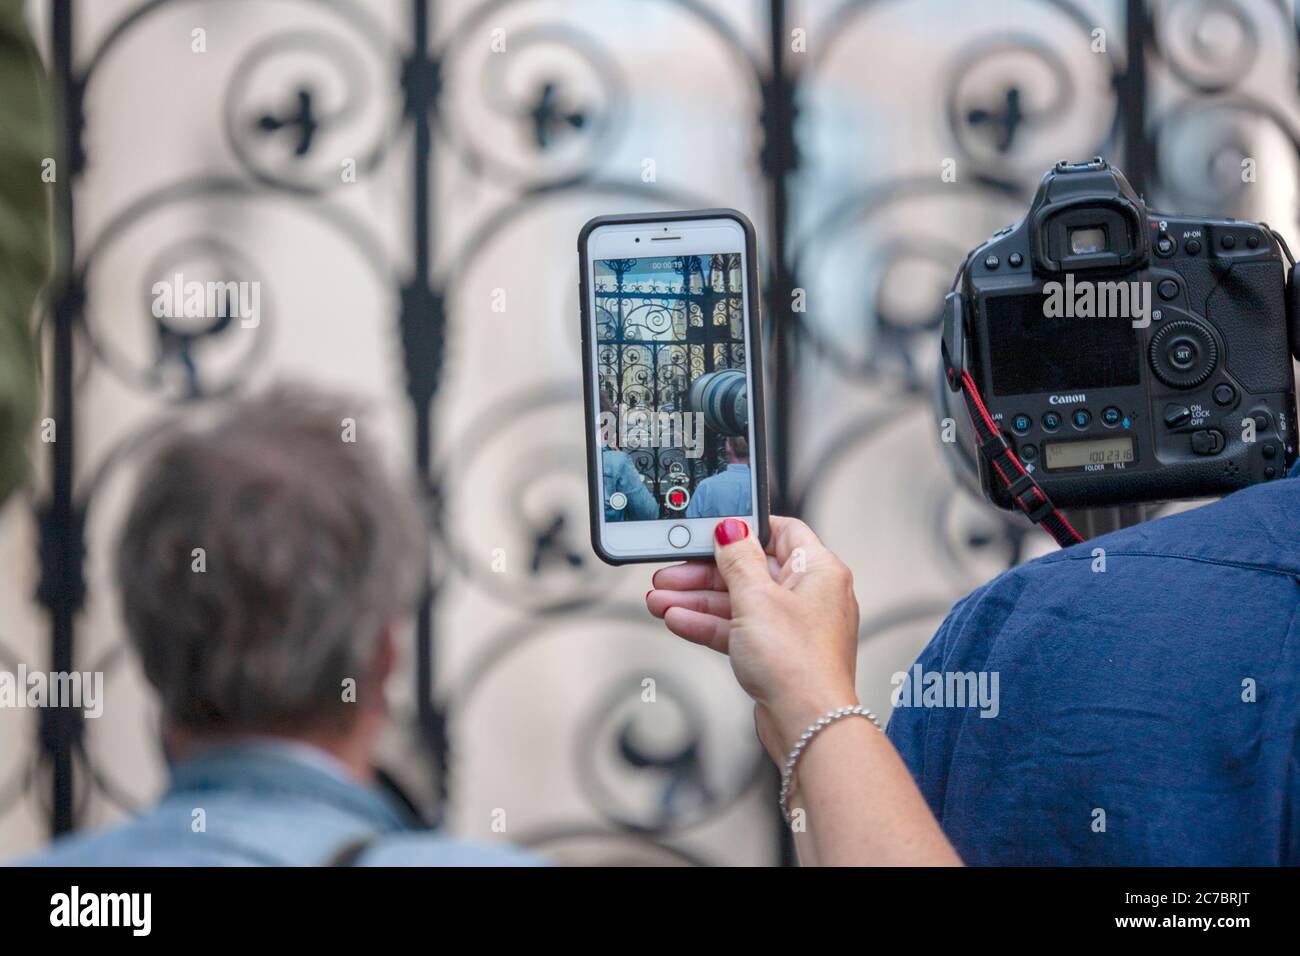 Johnny Depp fan tient un appareil photo téléphone pour filmer l'acteur hollywoodien alors qu'il se prépare à quitter le court, Londres, Angleterre Royaume-Uni Banque D'Images